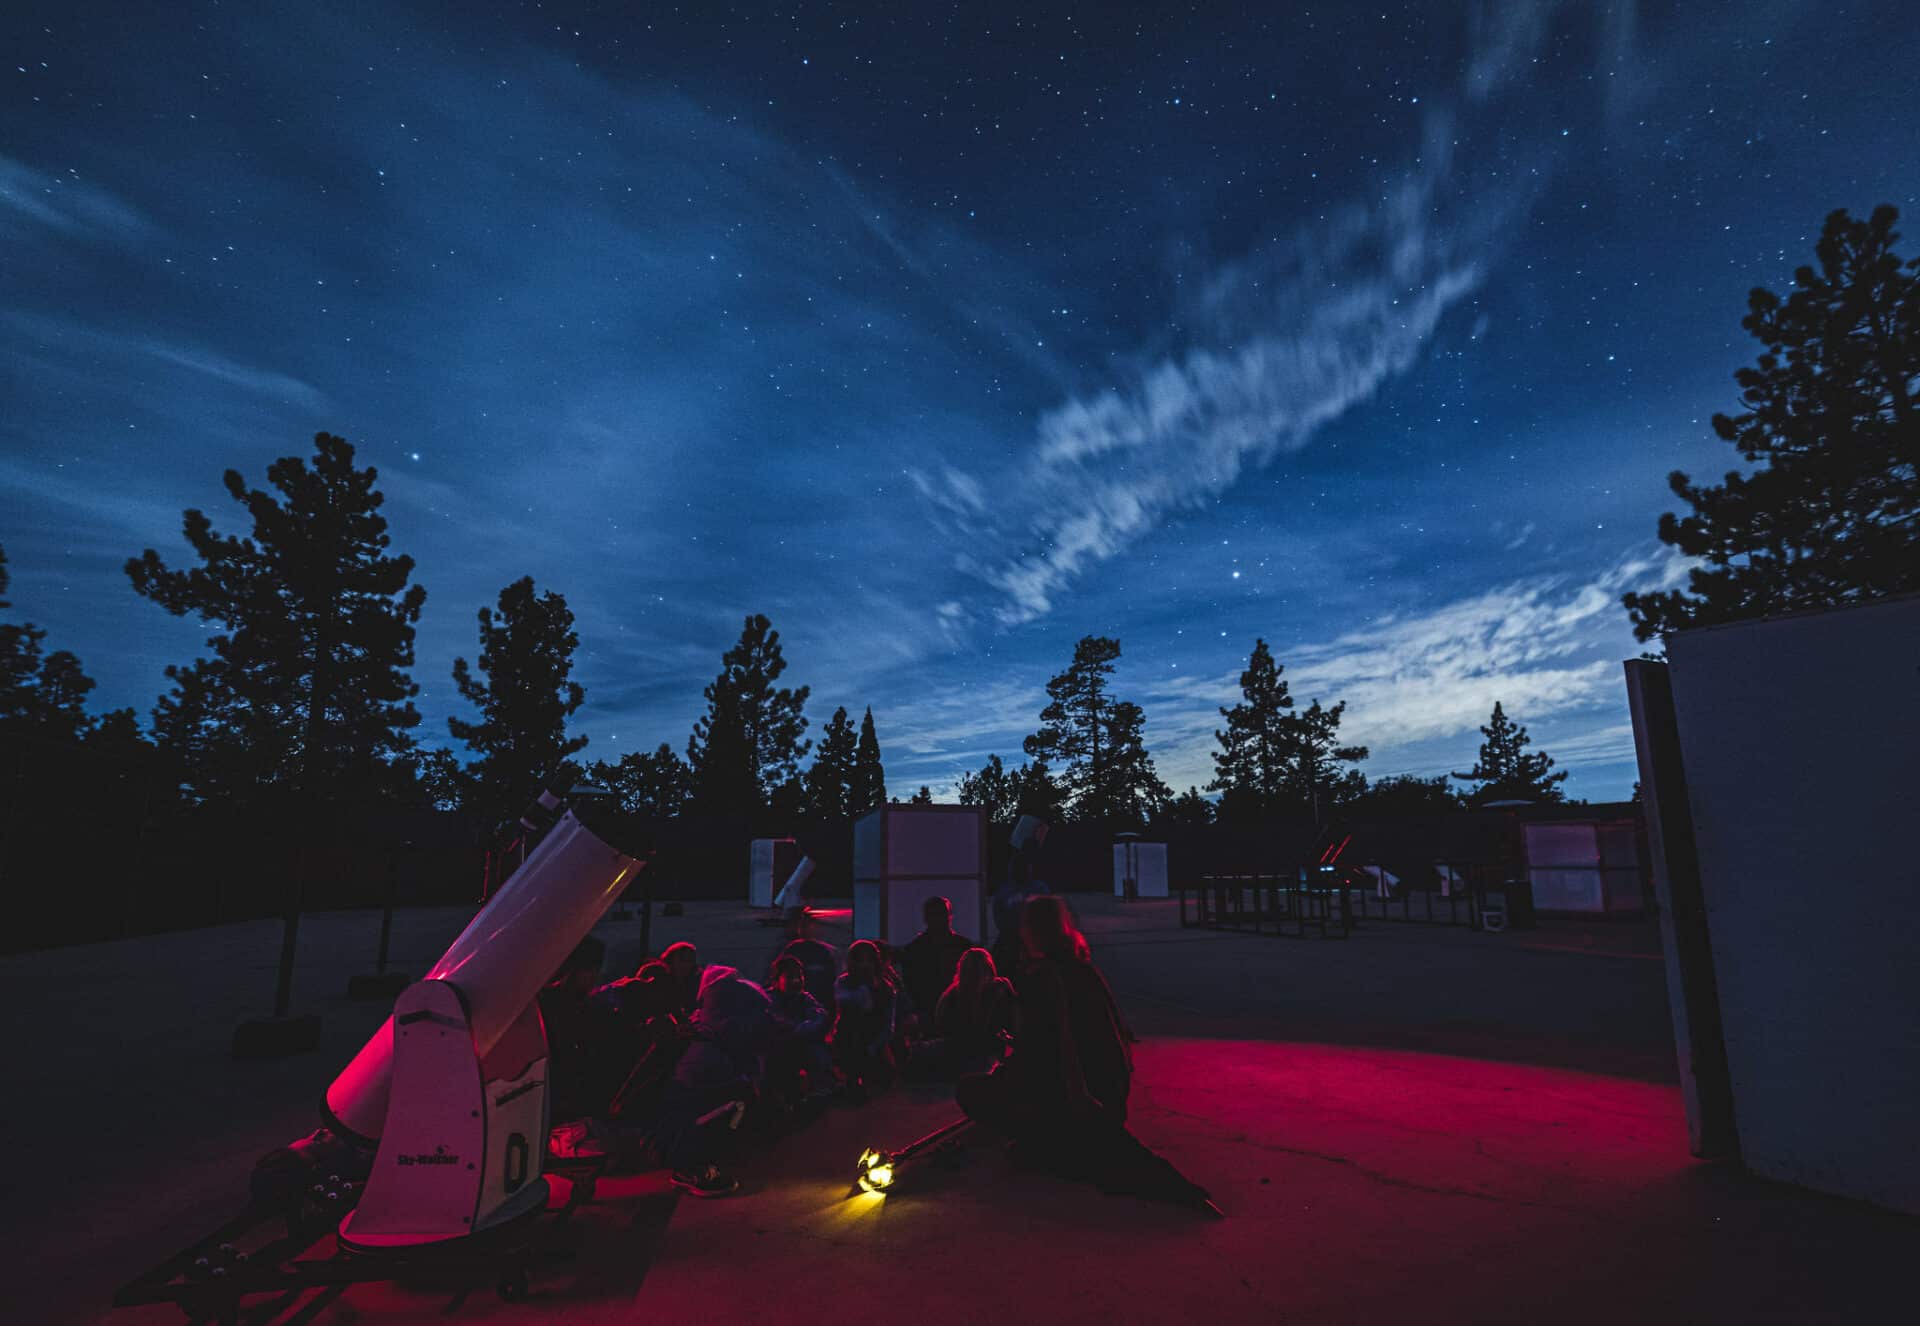 Kids sitting around telescope.